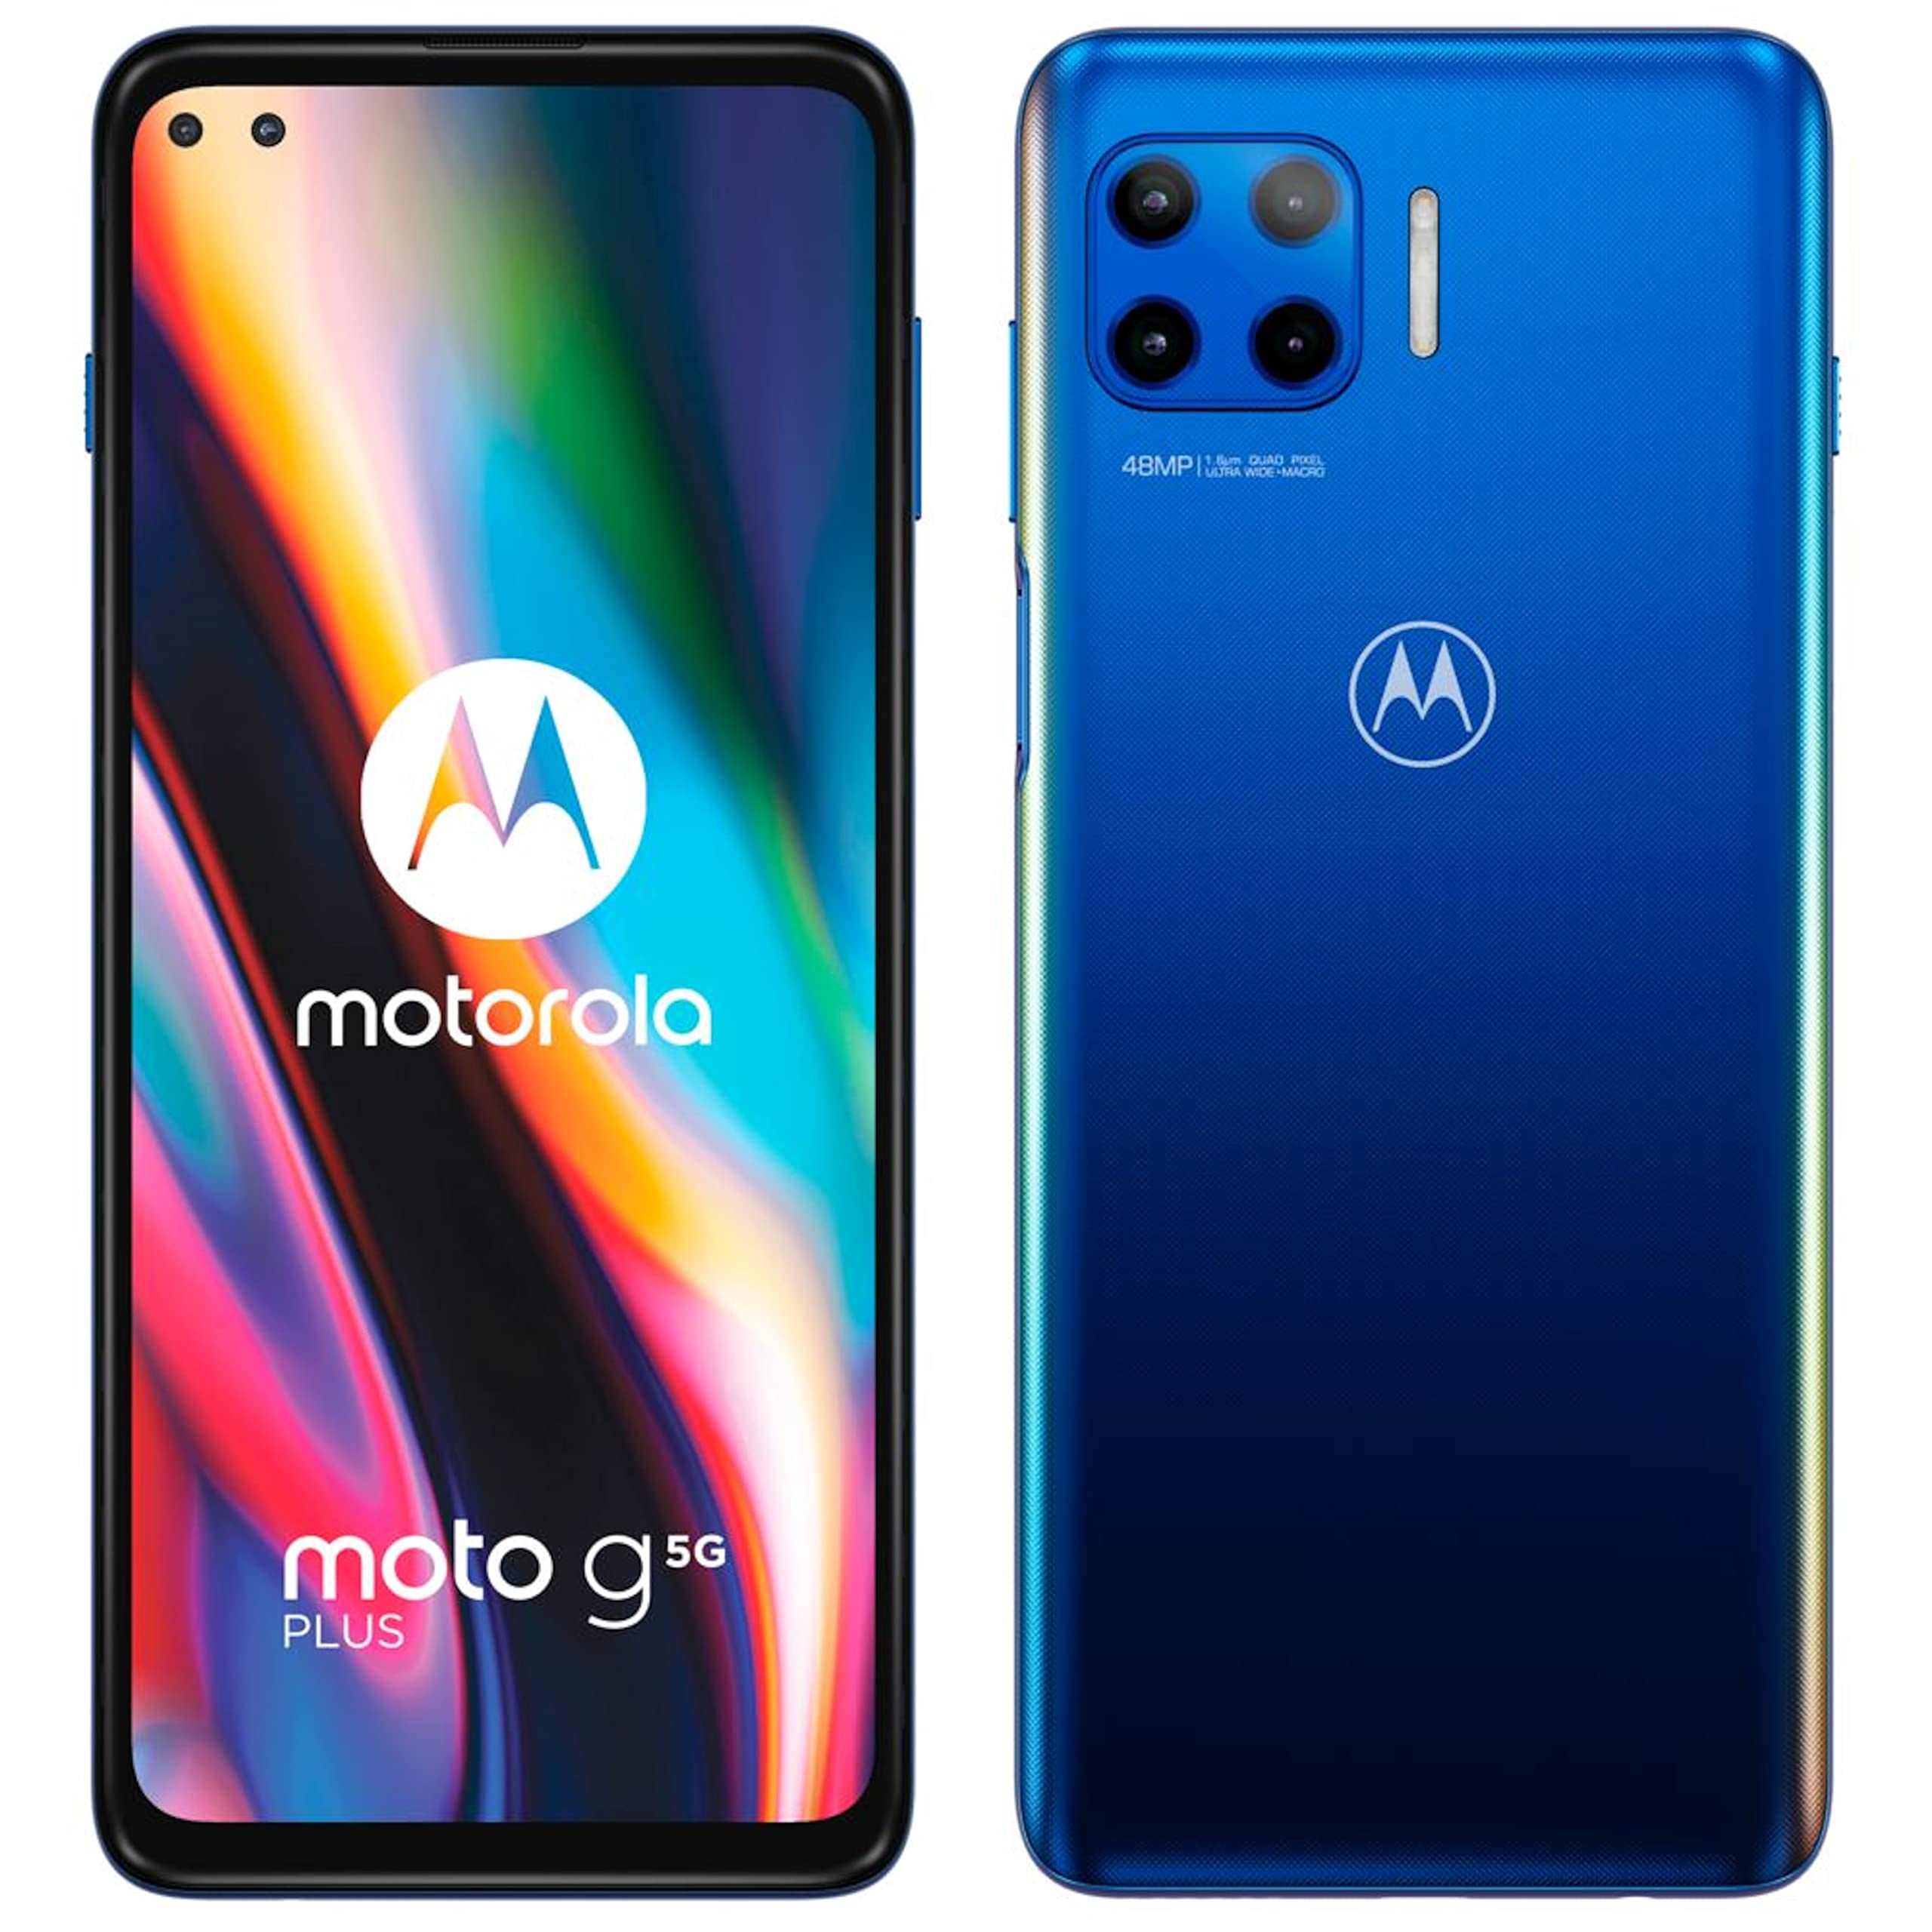 Motorola XT2075-3 moto g5G plus Dual Sim 4+64GB surfing blue DE